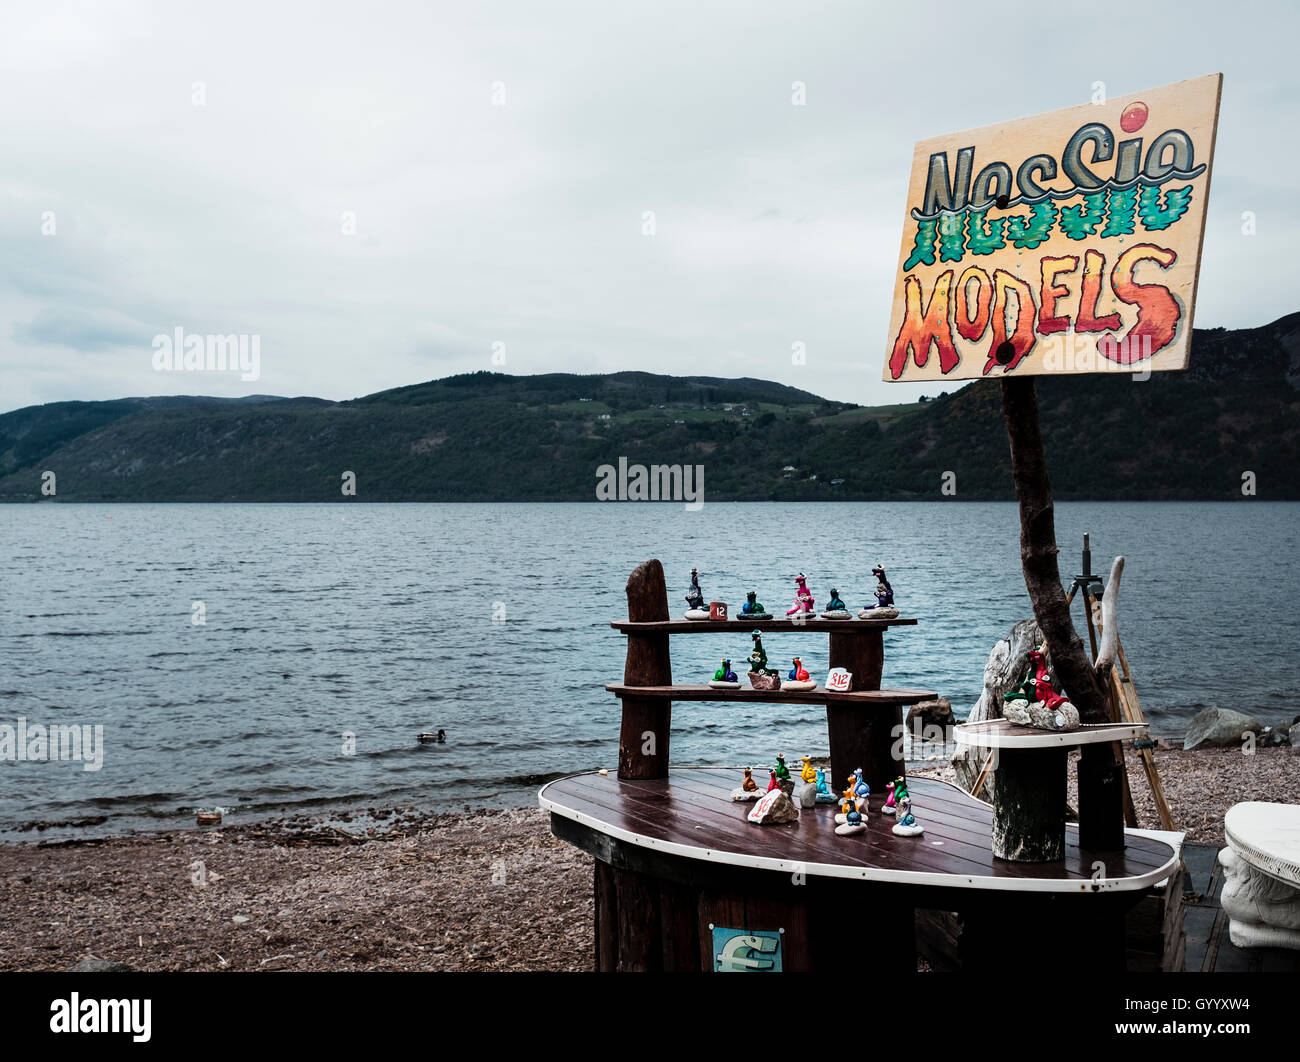 Rives du Loch Ness, stand de vente avec figurines en plastique du monstre Nessie, Dores, Highland, Ecosse, Royaume-Uni Banque D'Images